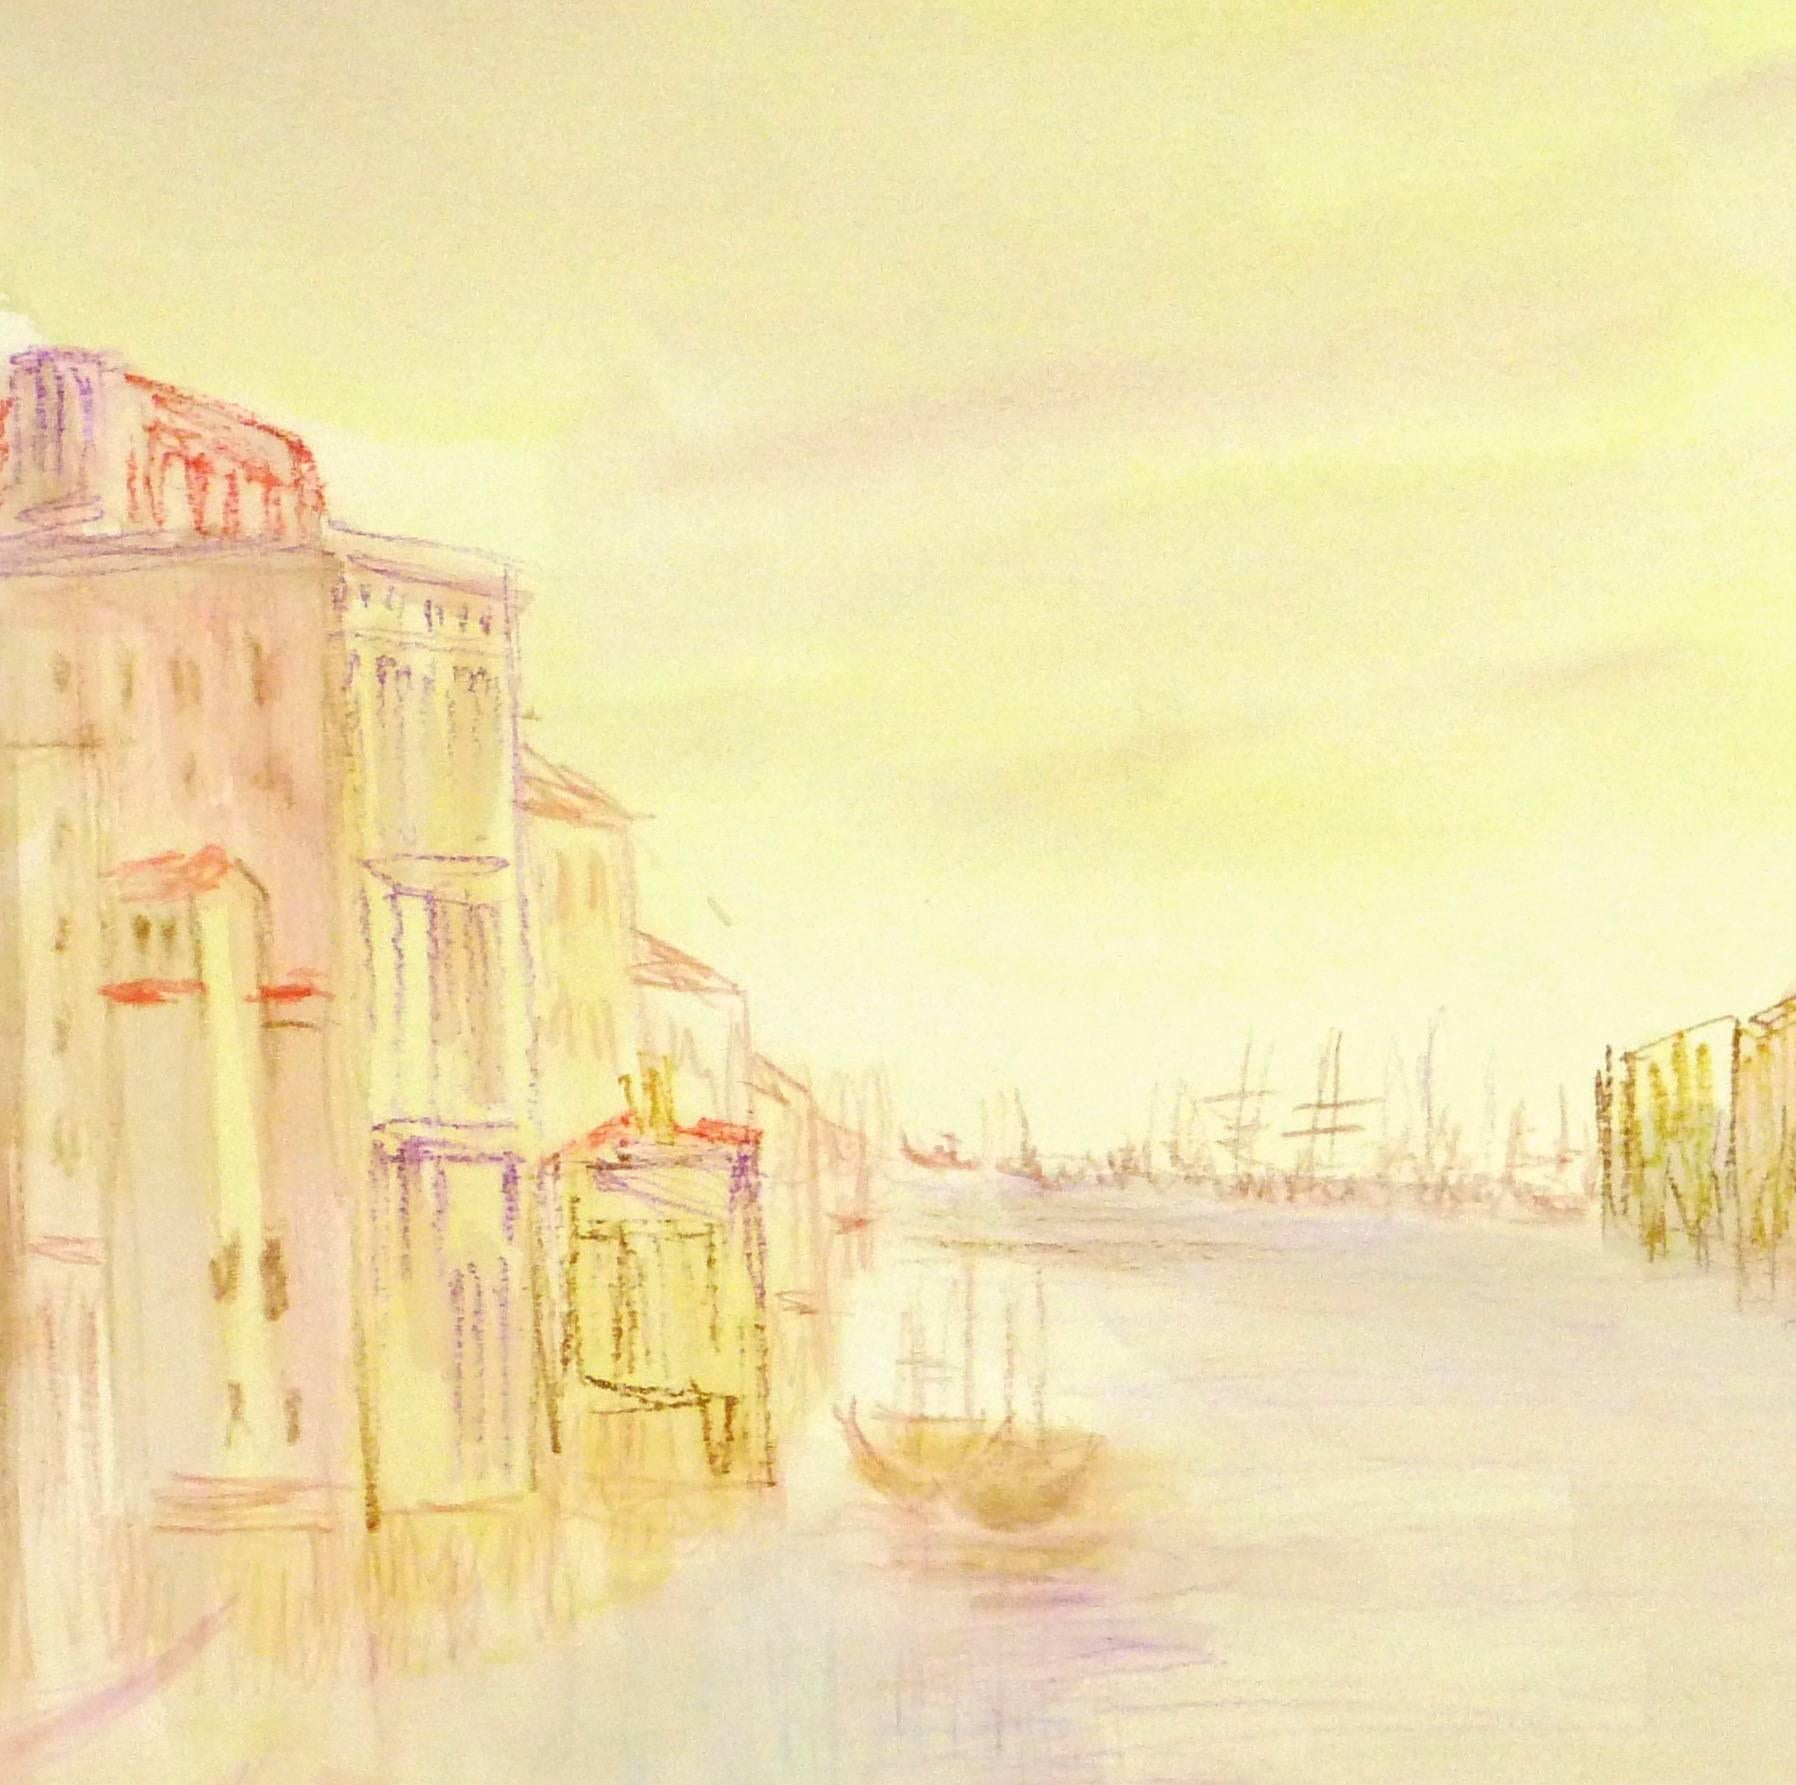 Vintage Watercolor Landscape - Venice Sunrise - Orange Landscape Art by Unknown